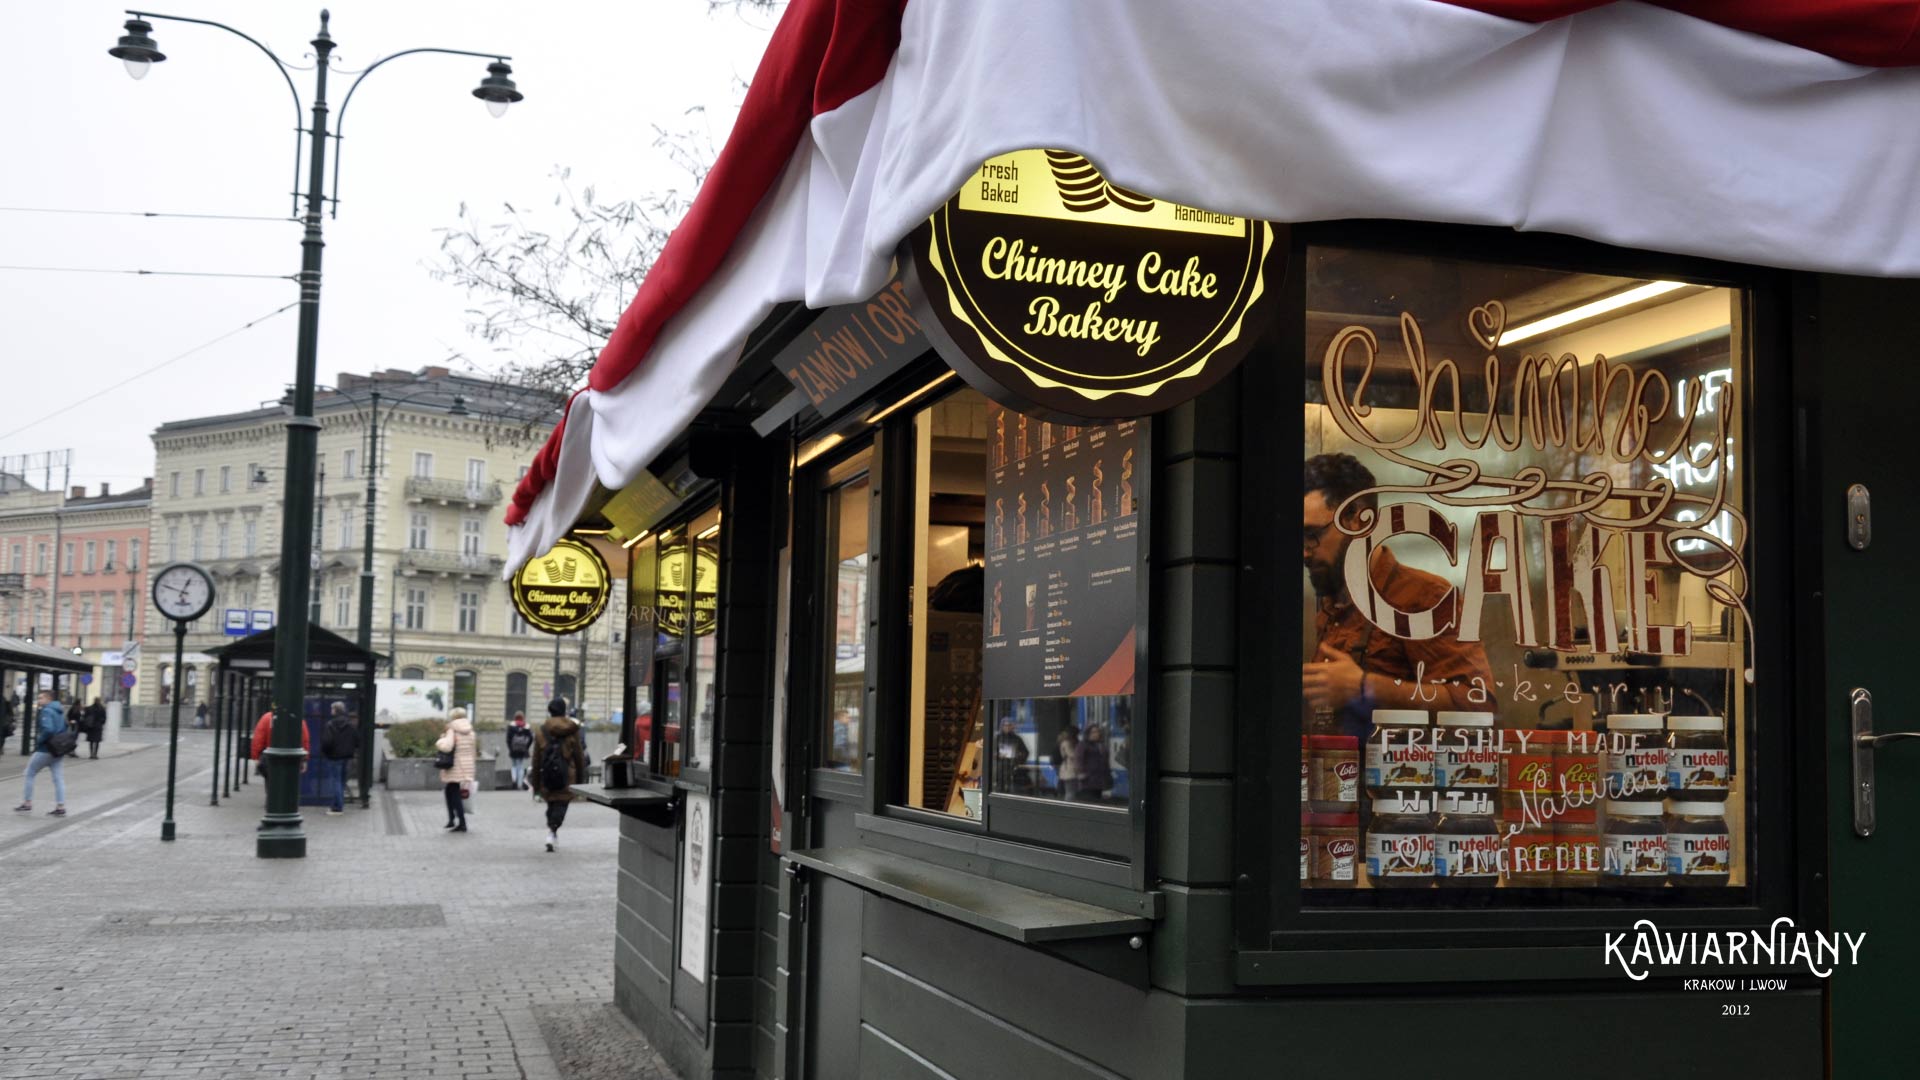 Chimney Cake Bakery – prawie węgierski kurtoszkołacz w Krakowie